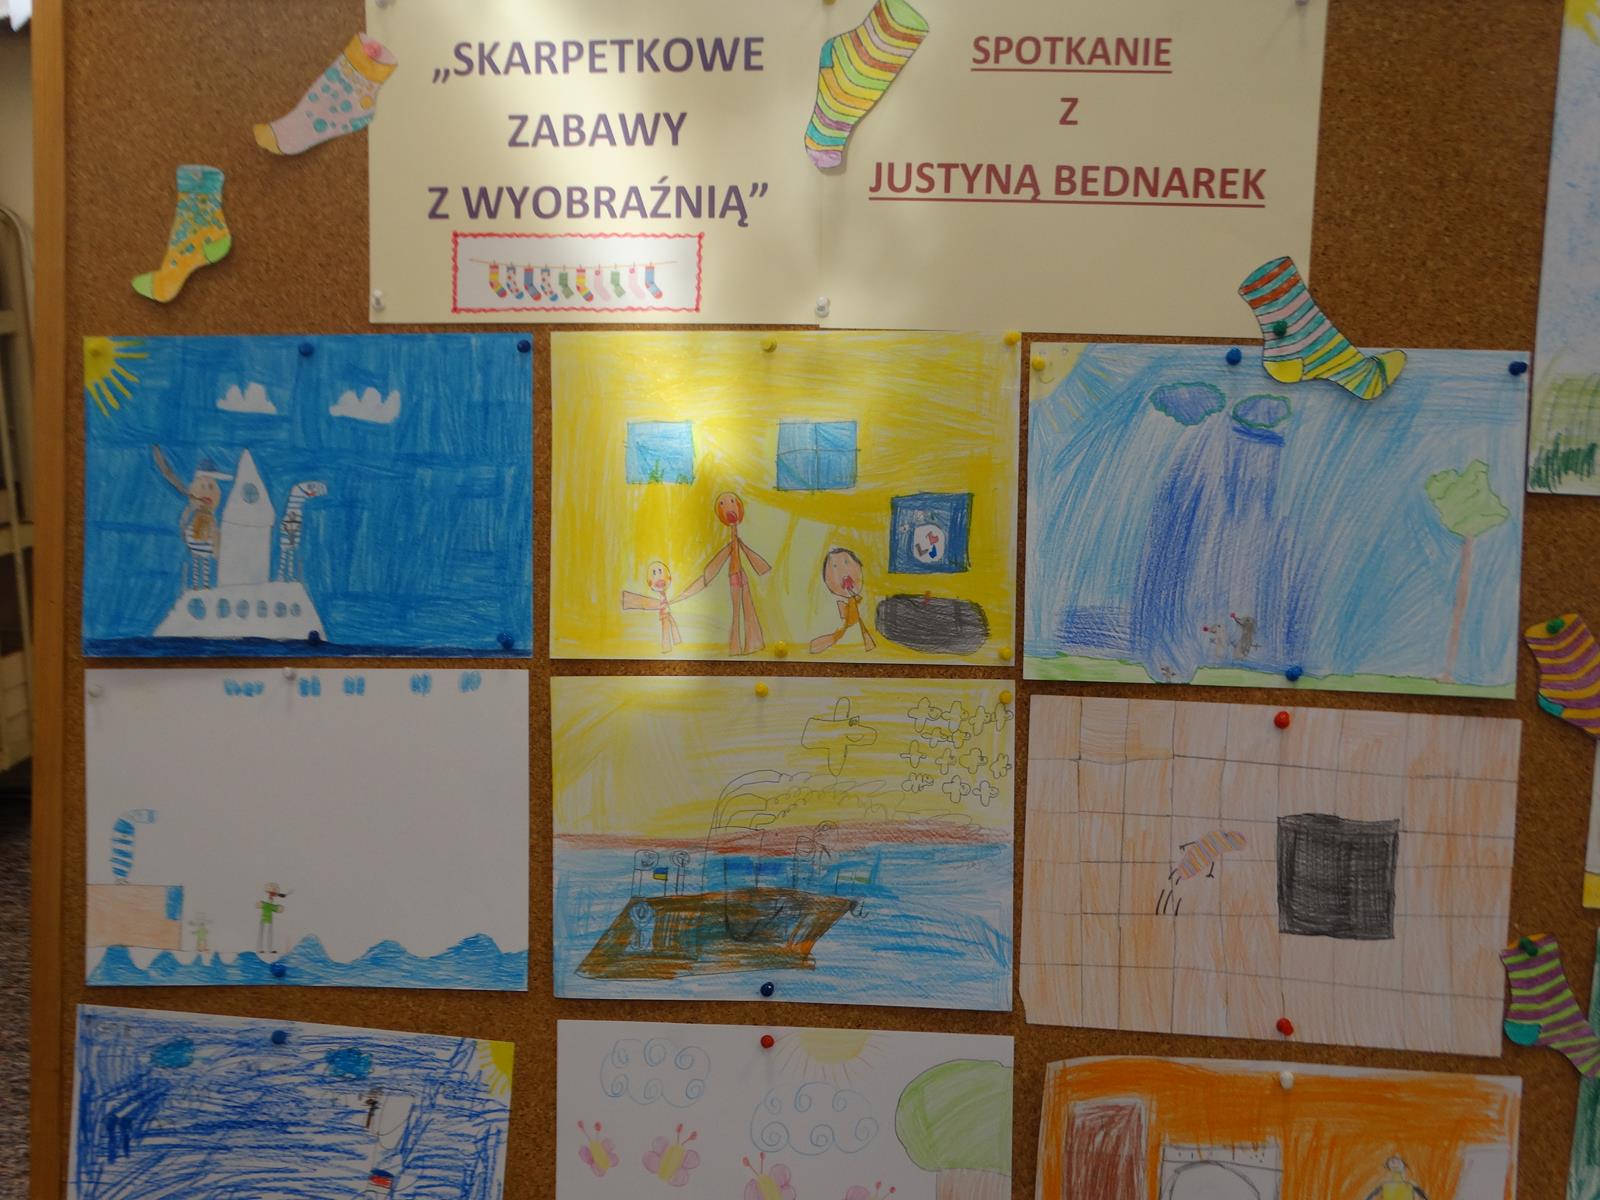 rysunki wykonane przez dzieci biorące udział w spotkaniach przedstawiające bohaterów książek Justyny Bednarek